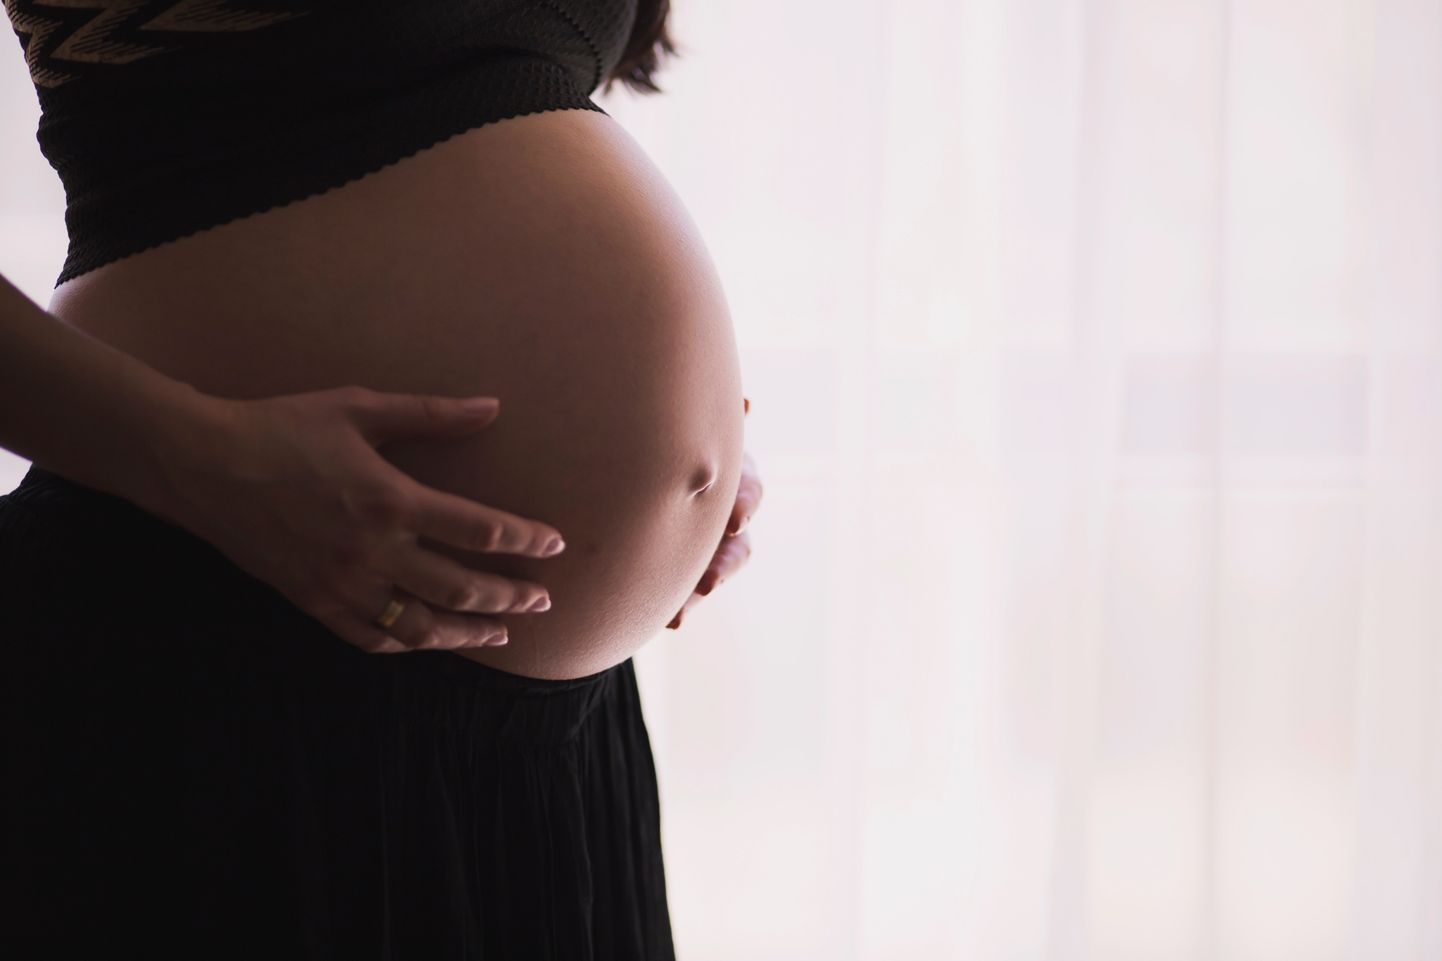 Ema toitumine raseduse ajal on eriti märkimisväärne tegur seetõttu, et toitumisharjumused on muudetavad, ning seepärast, et nii enne rasedust kui ka raseduse ajal on toitumine oluline ennetav meede mitmesugustele probleemidele